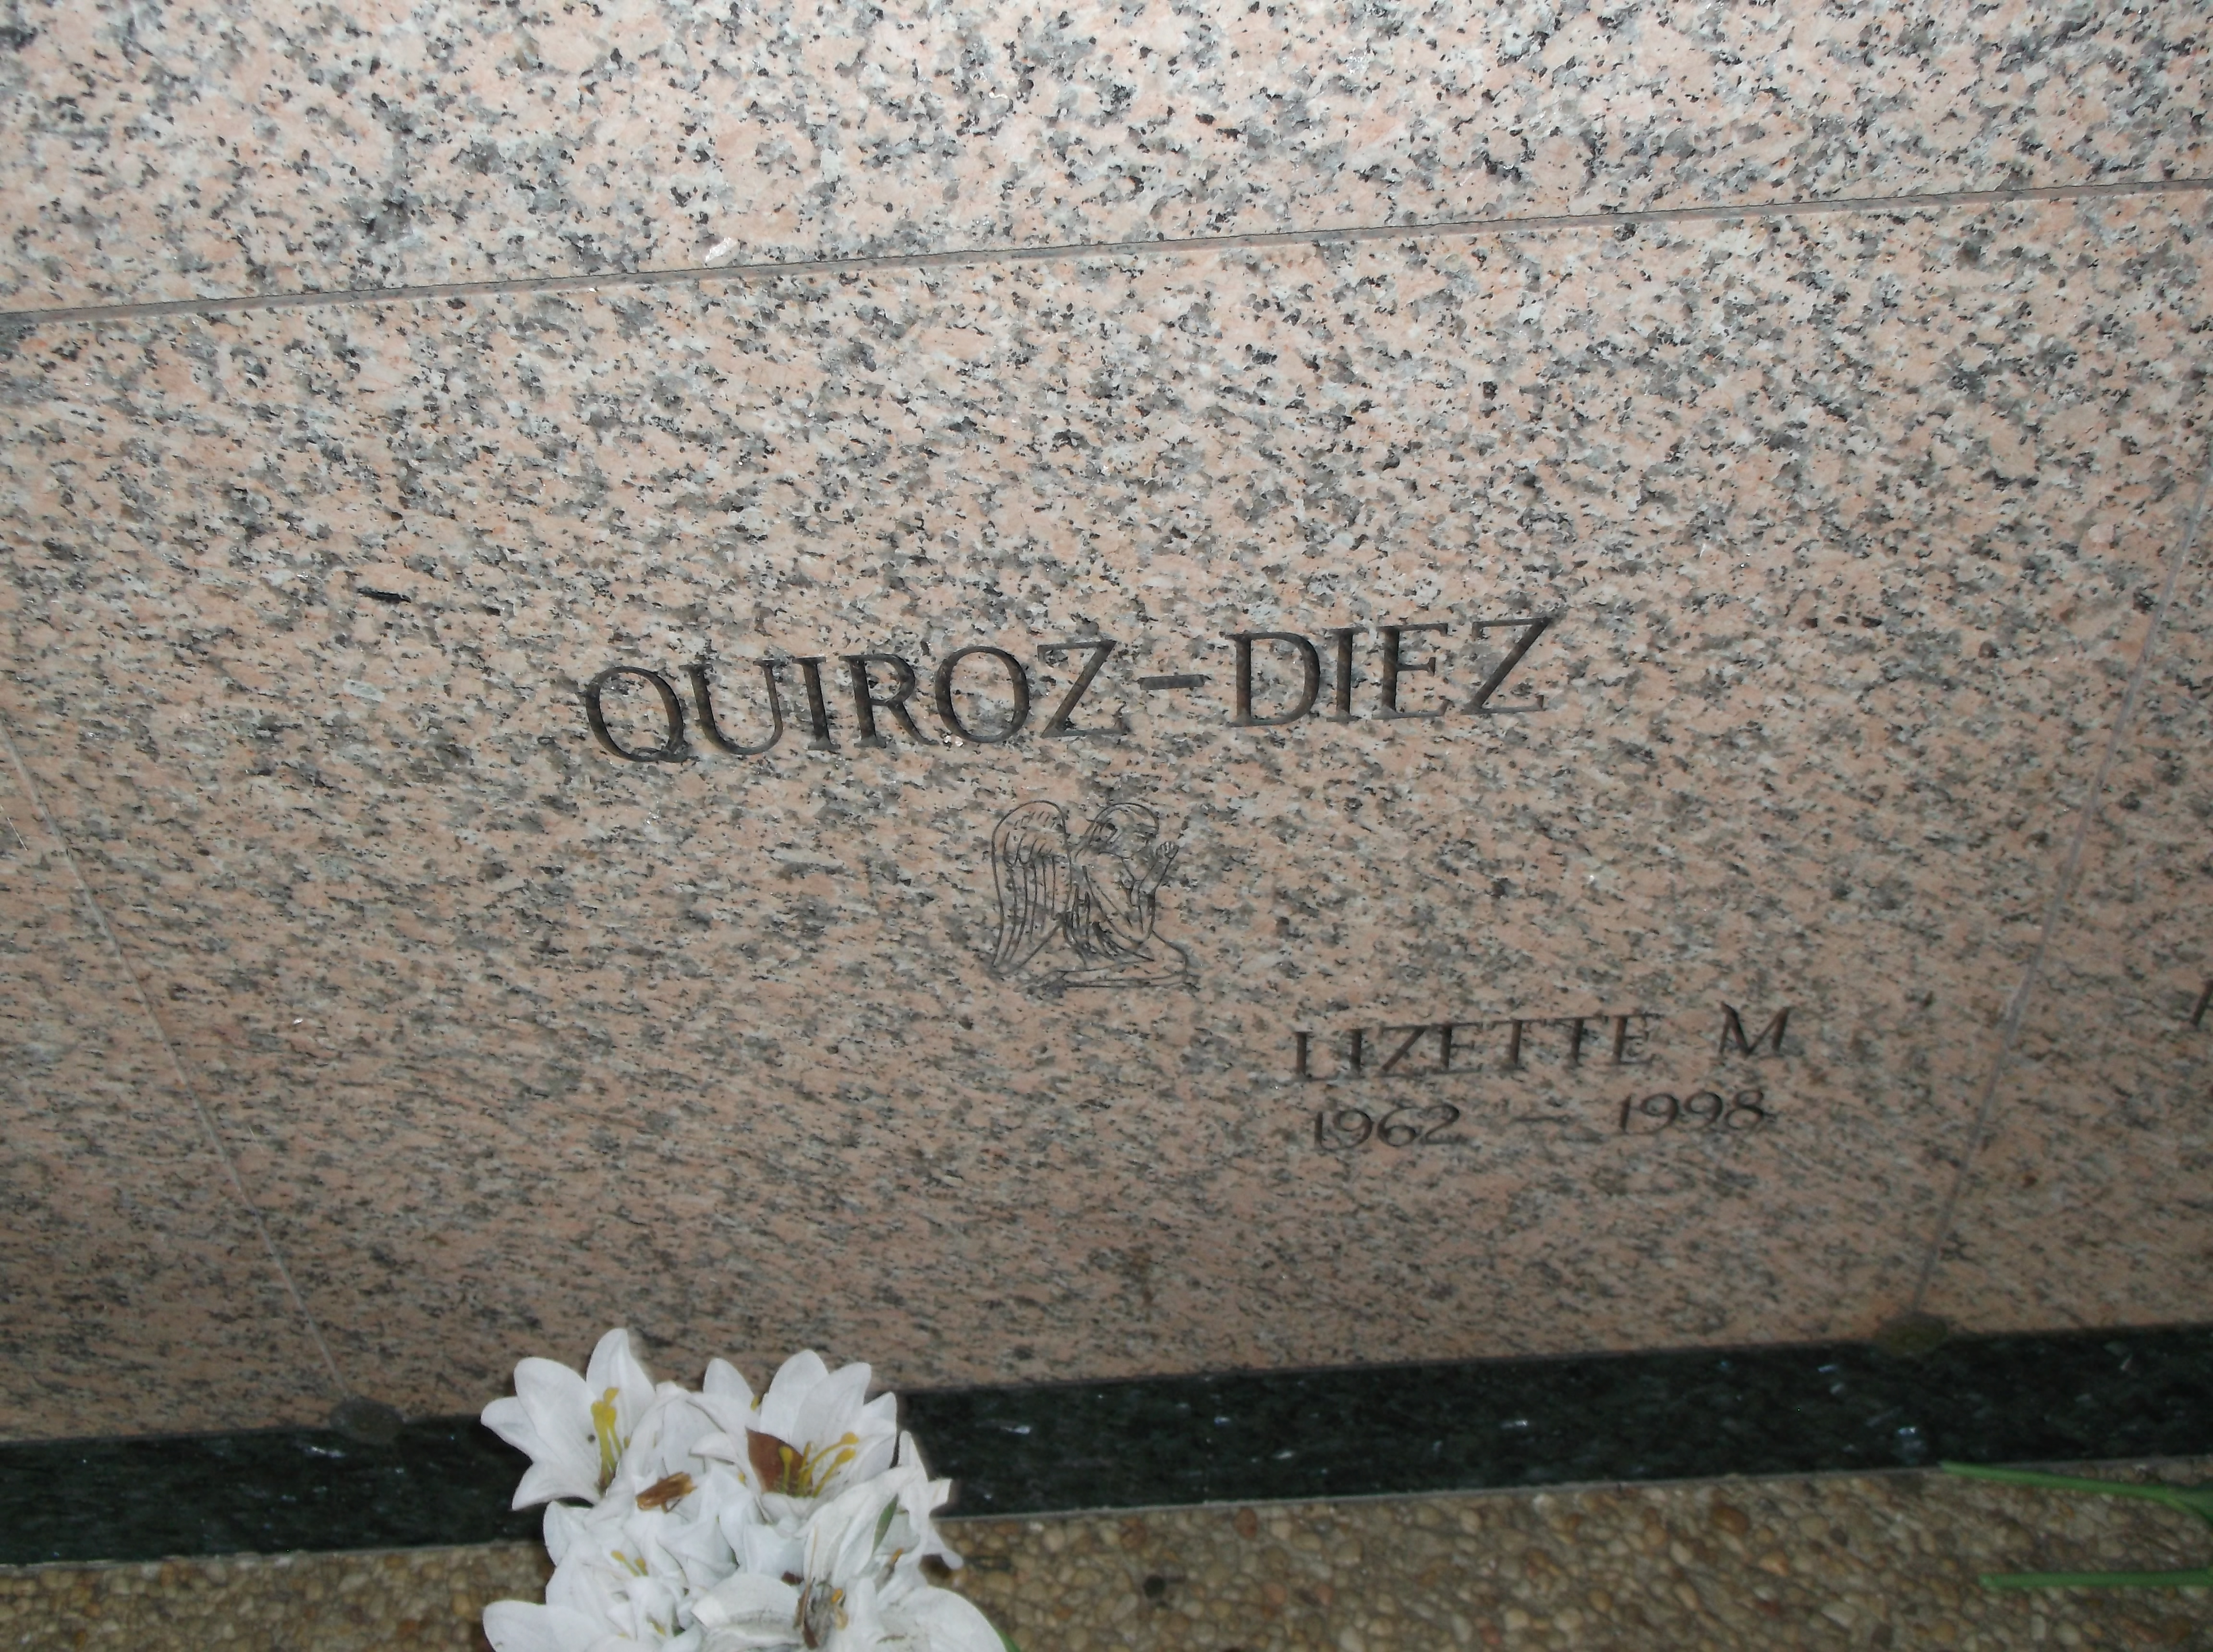 Lizette M Quiroz-Diez